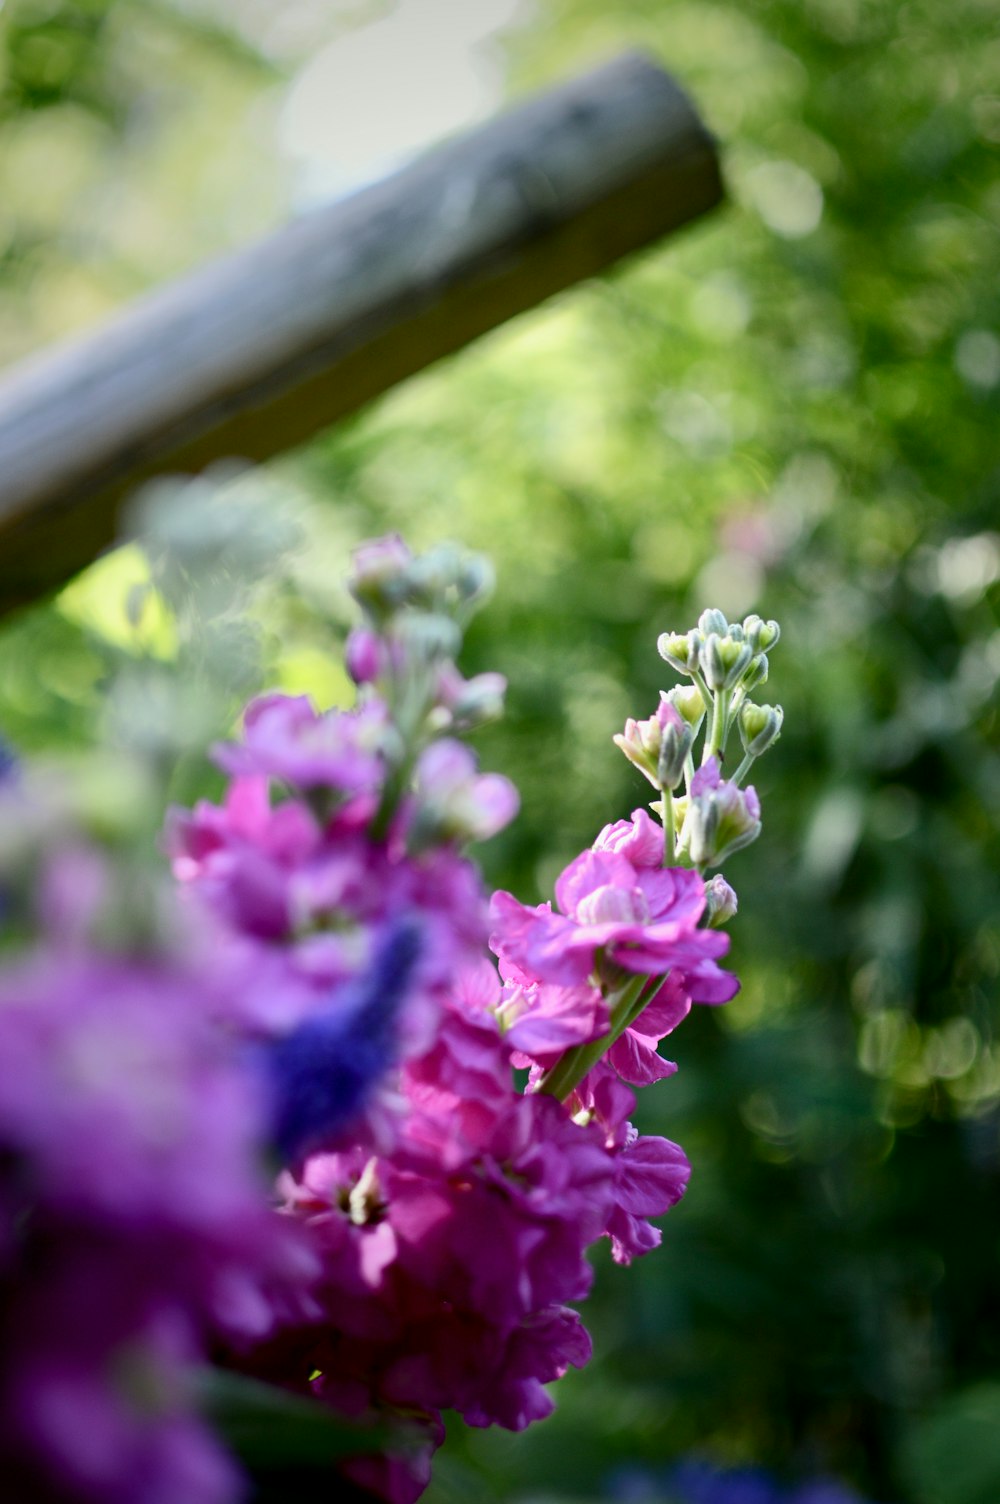 purple flowers in tilt shift lens